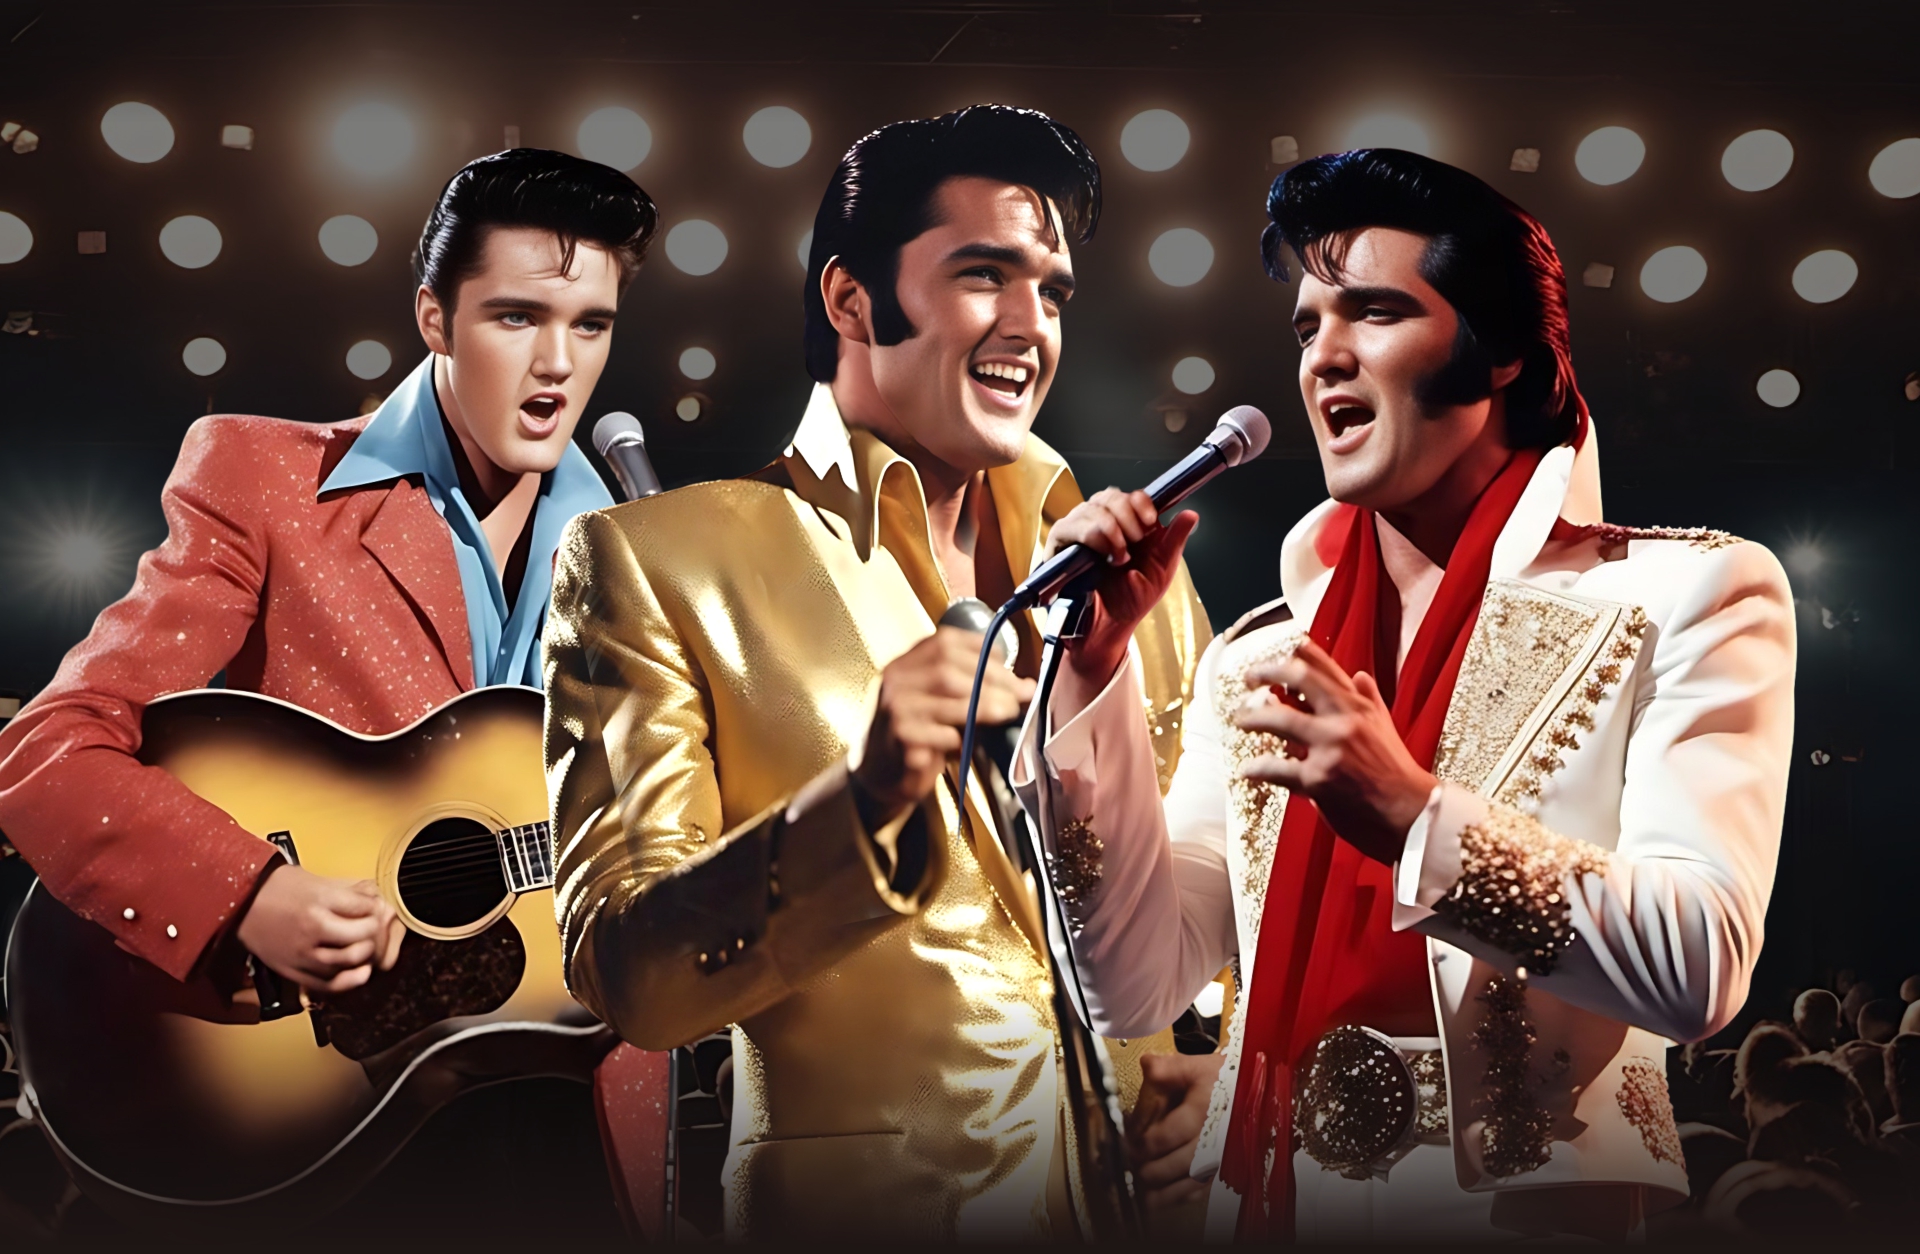 En animerad bild som visar musikinstrument, klädsel, konsert och Elvis.